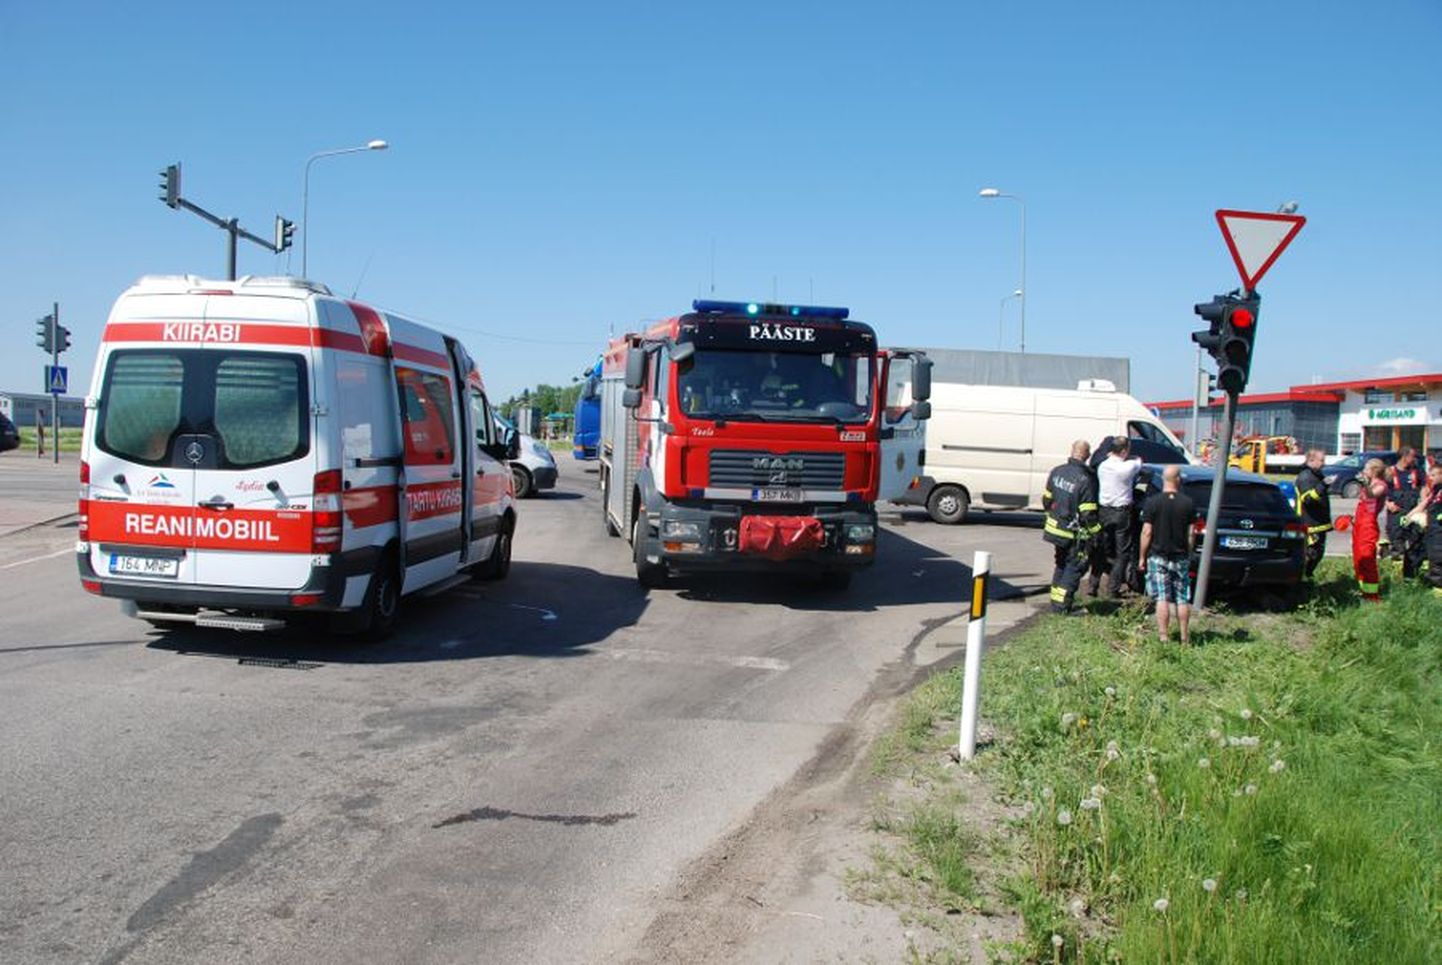 Liiklusõnnetus Tõrvandi ristmikul Ülenurmel, kus põrkasid kokku sõiduauto ja kaubik.